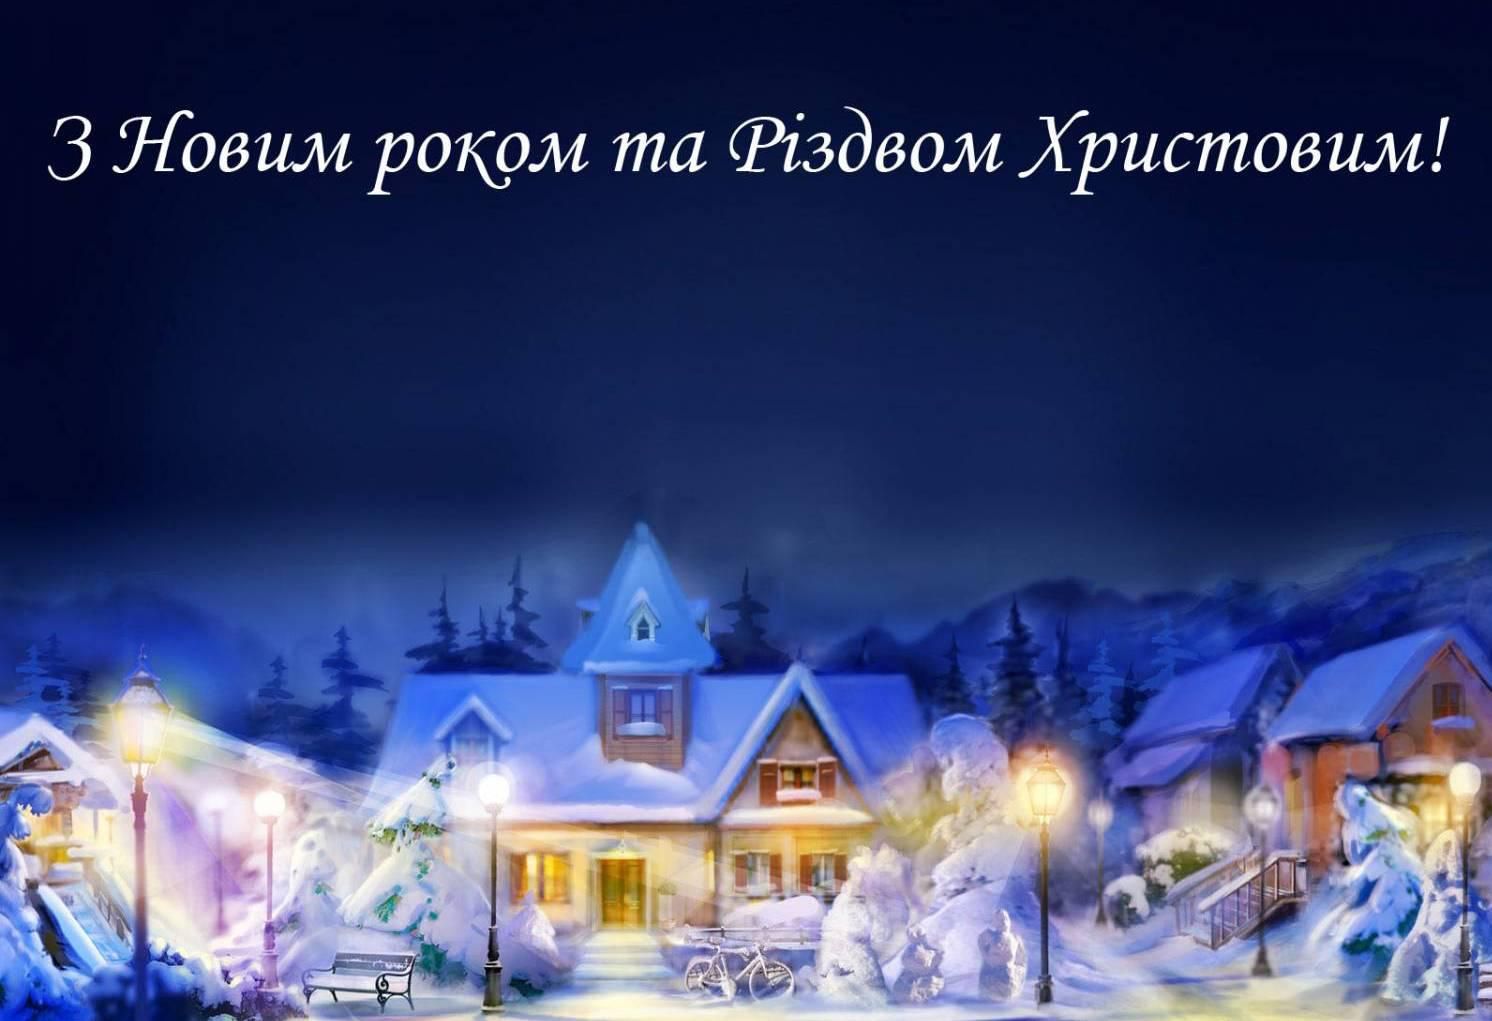 Привітання з Новим роком та Різдвом Христовим до сліз